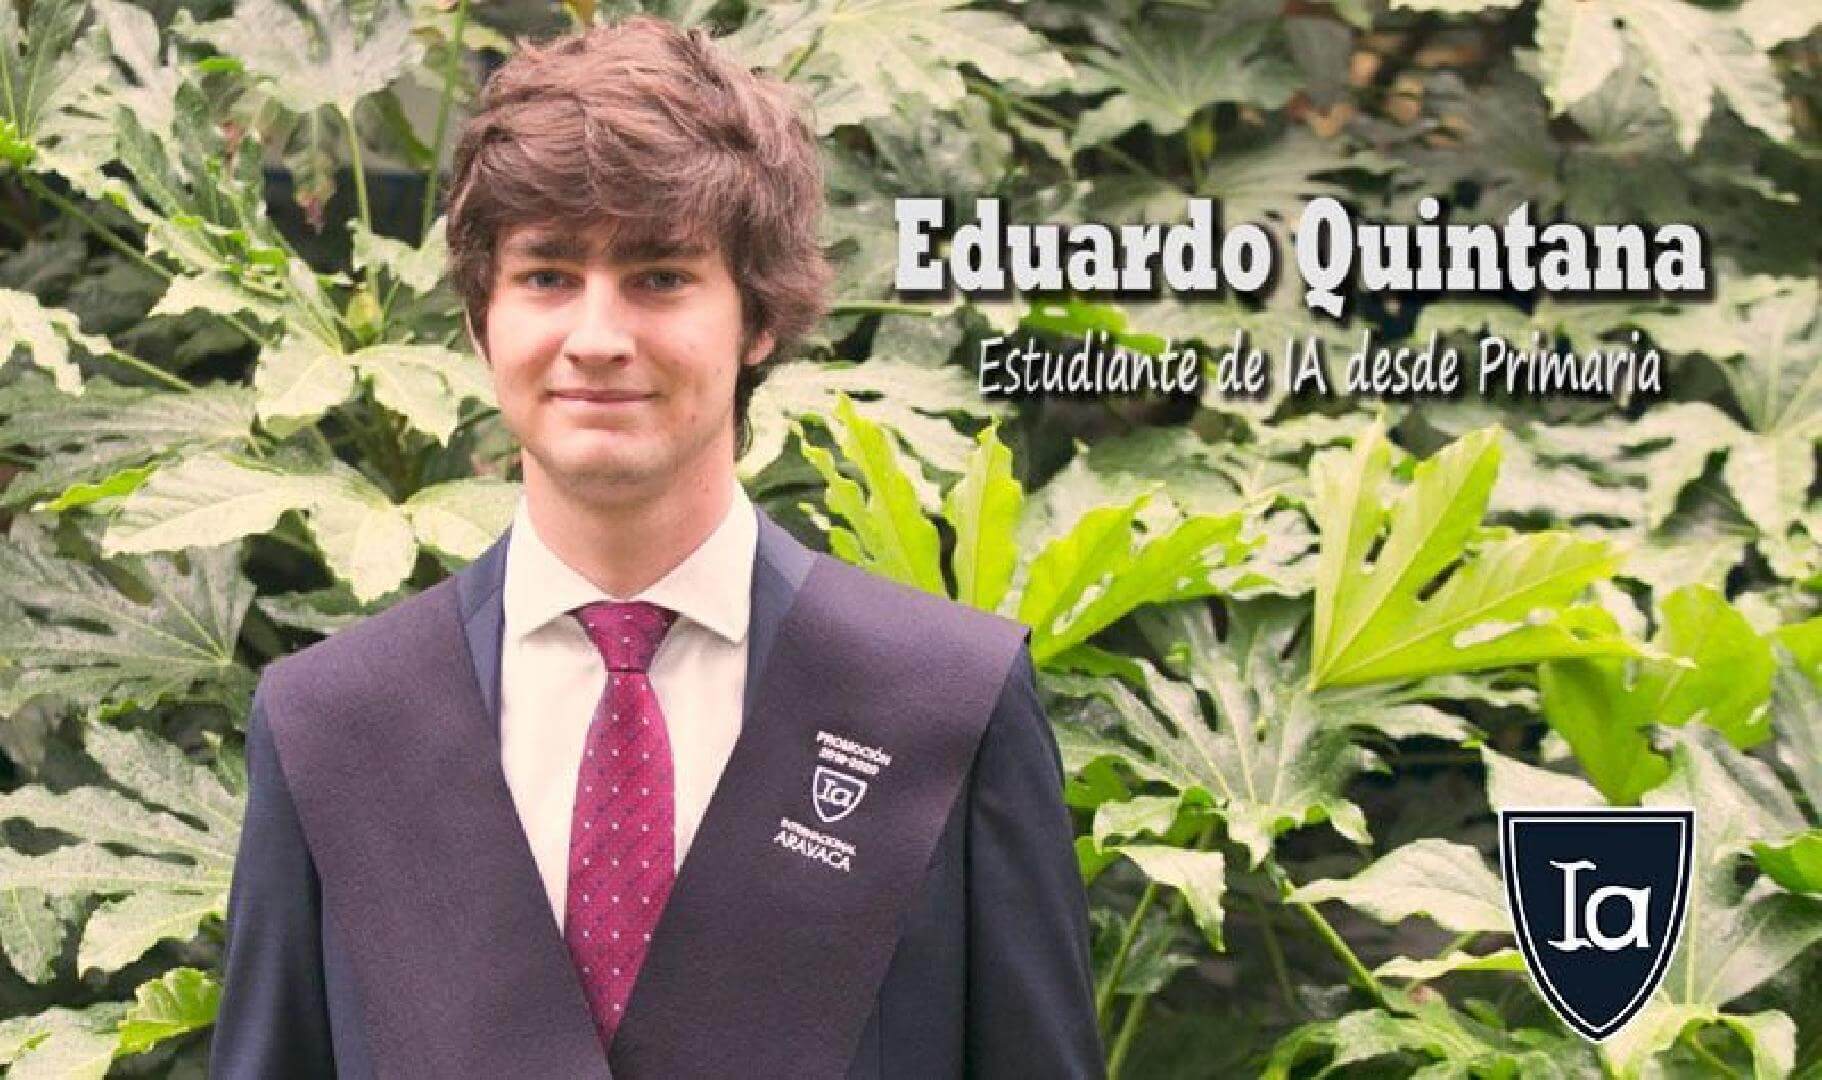 Eduardo Quintana: his success, our success